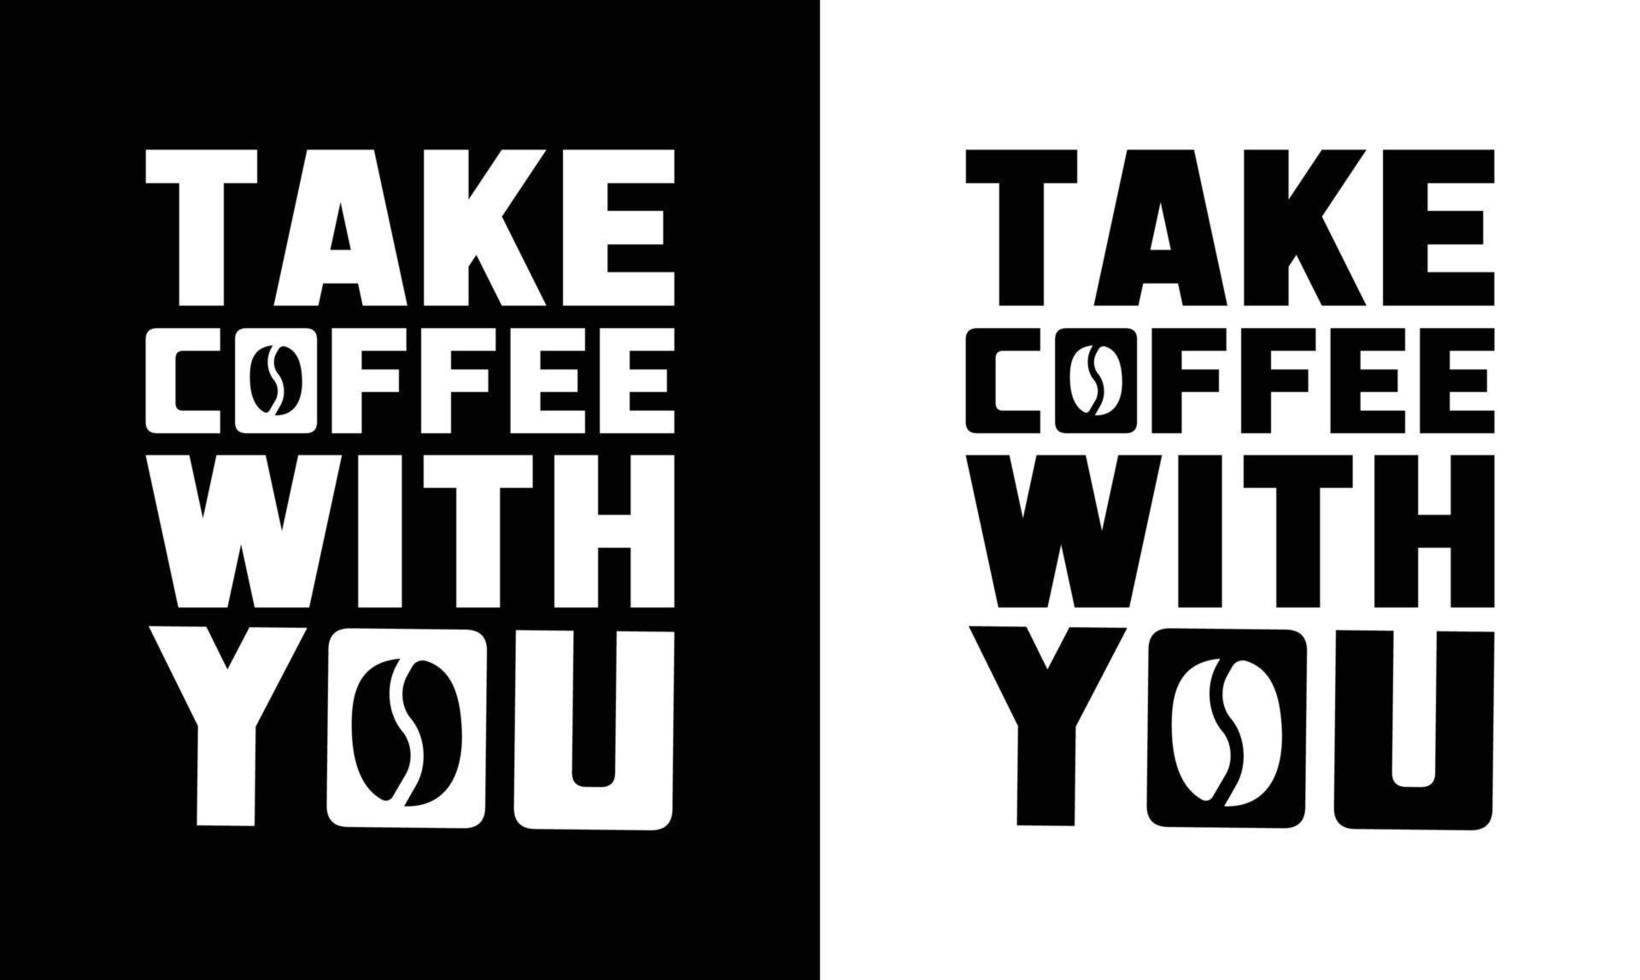 design de camiseta de citação de café, tipografia vetor